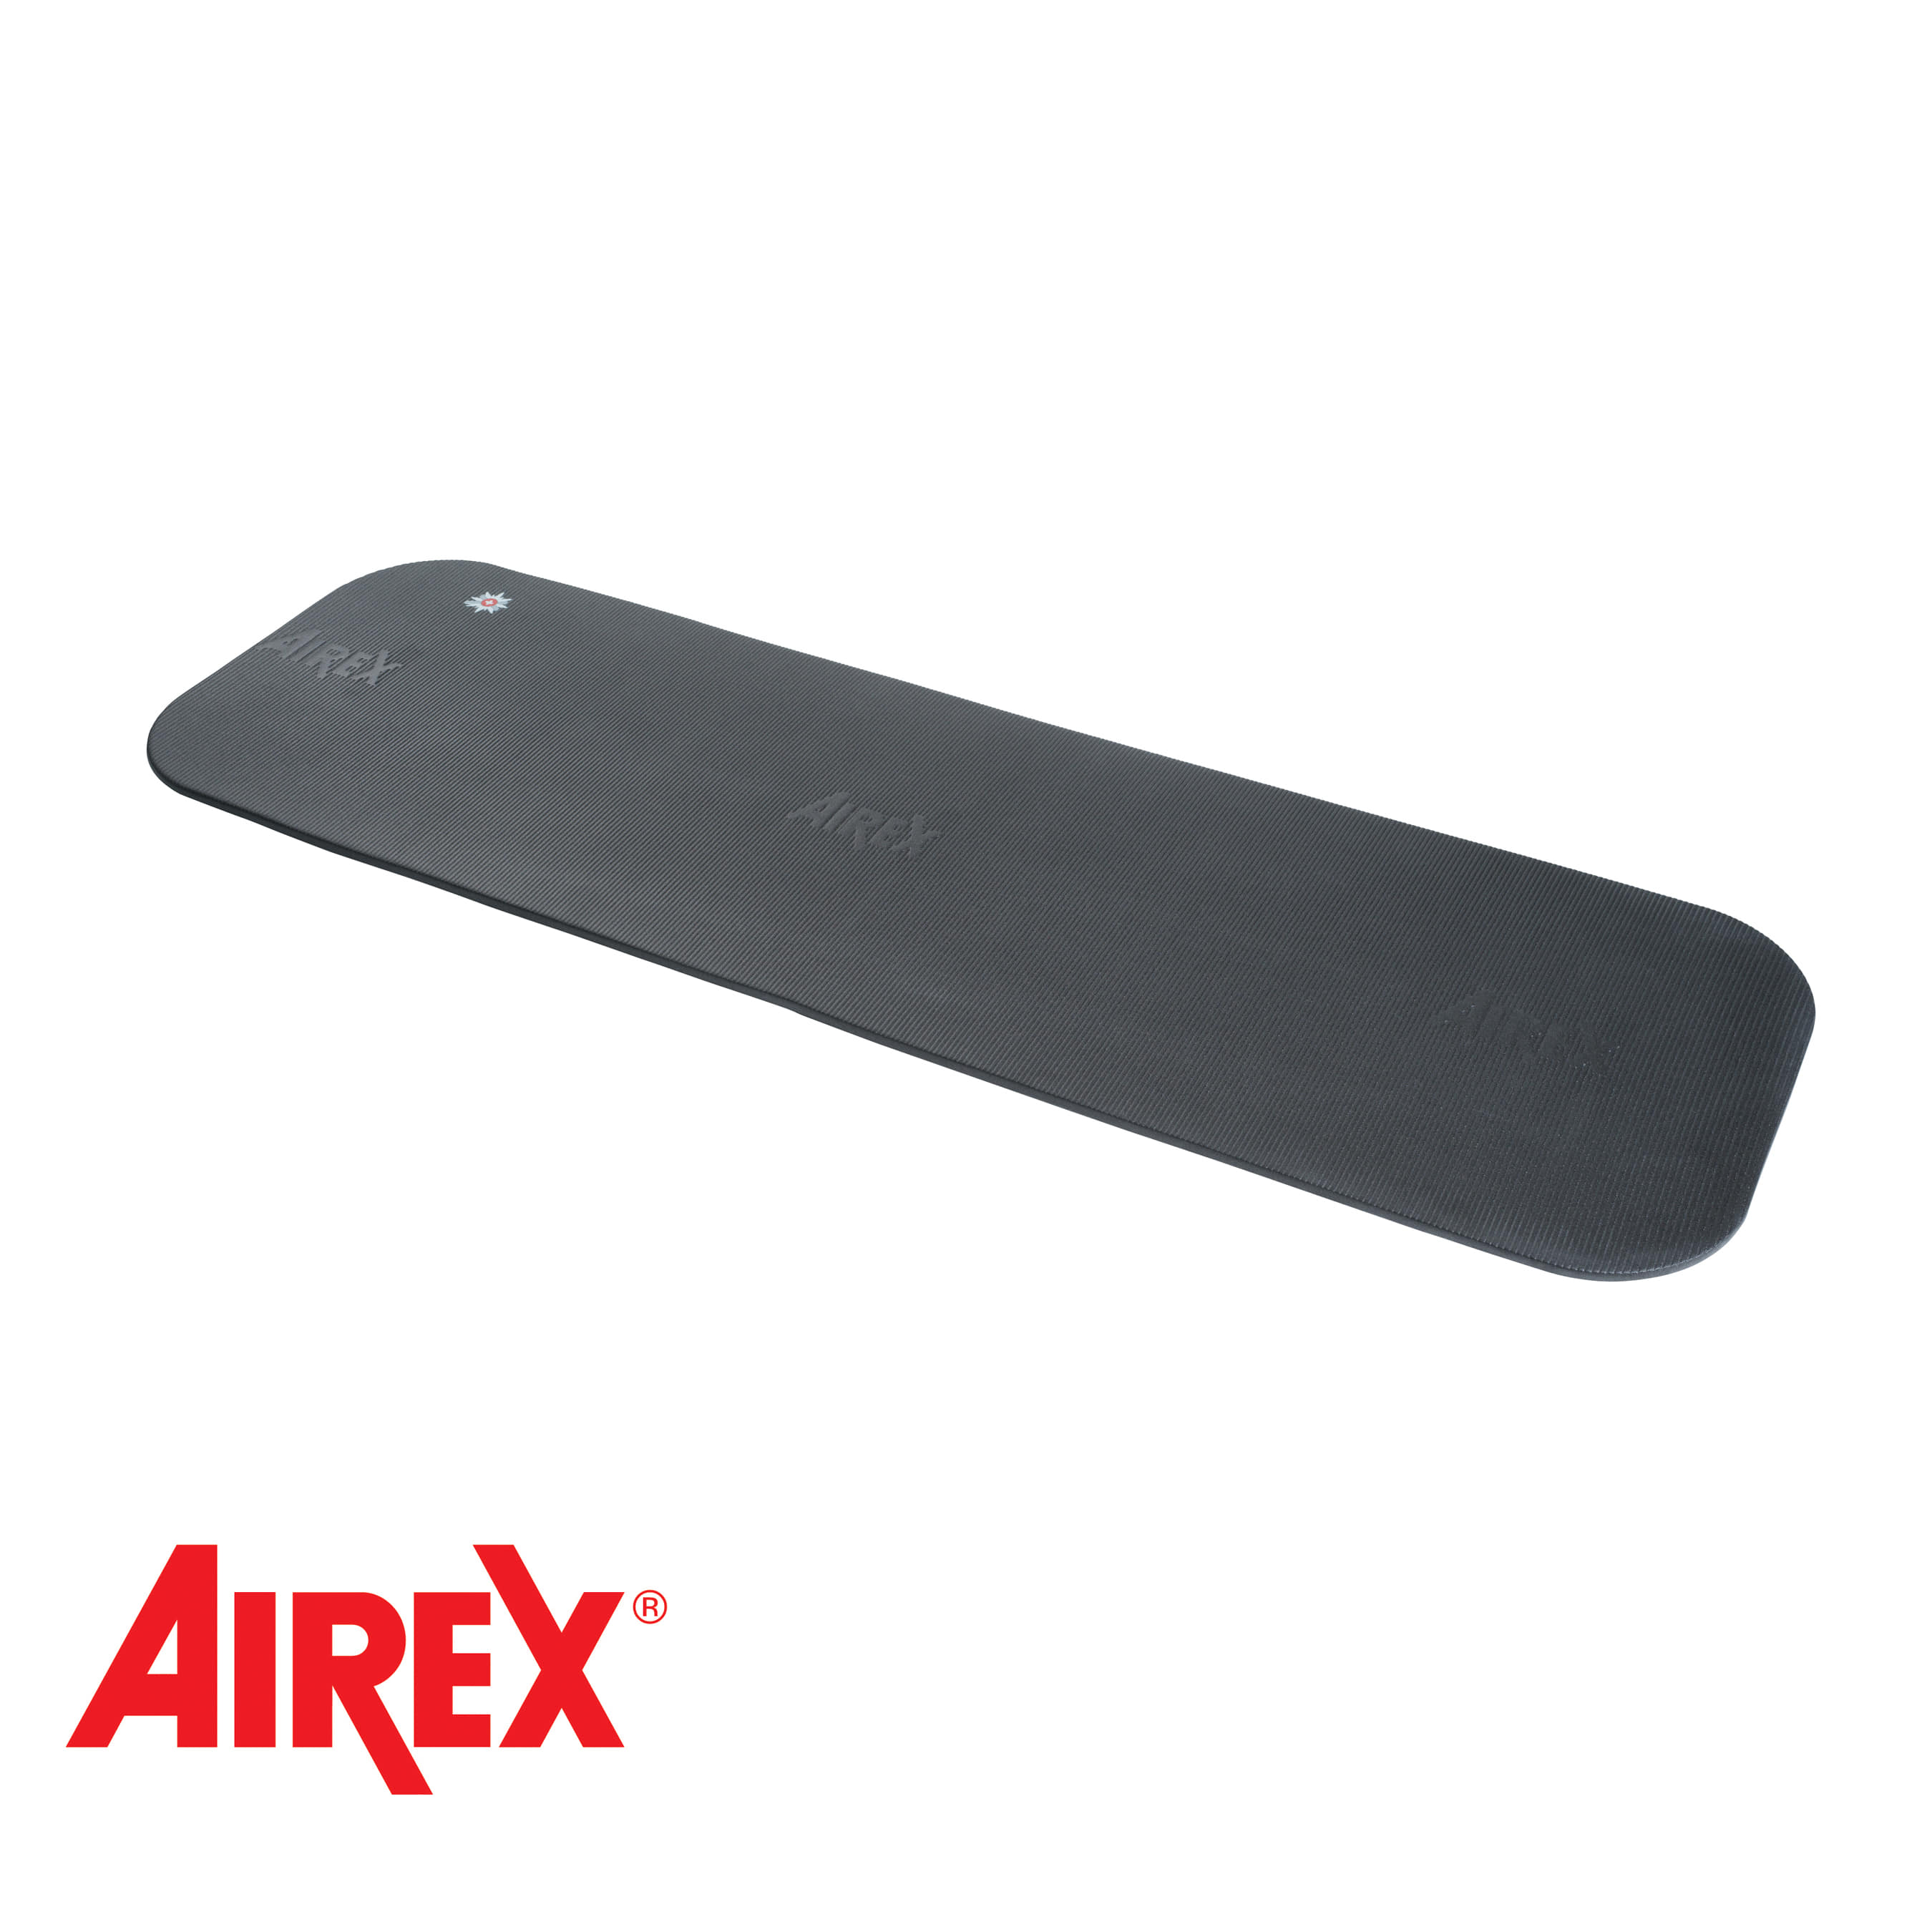 (정품 니패드 1ea 증정: 5월 31일까지)Airex® Coronalla 200 Mat Charcoal